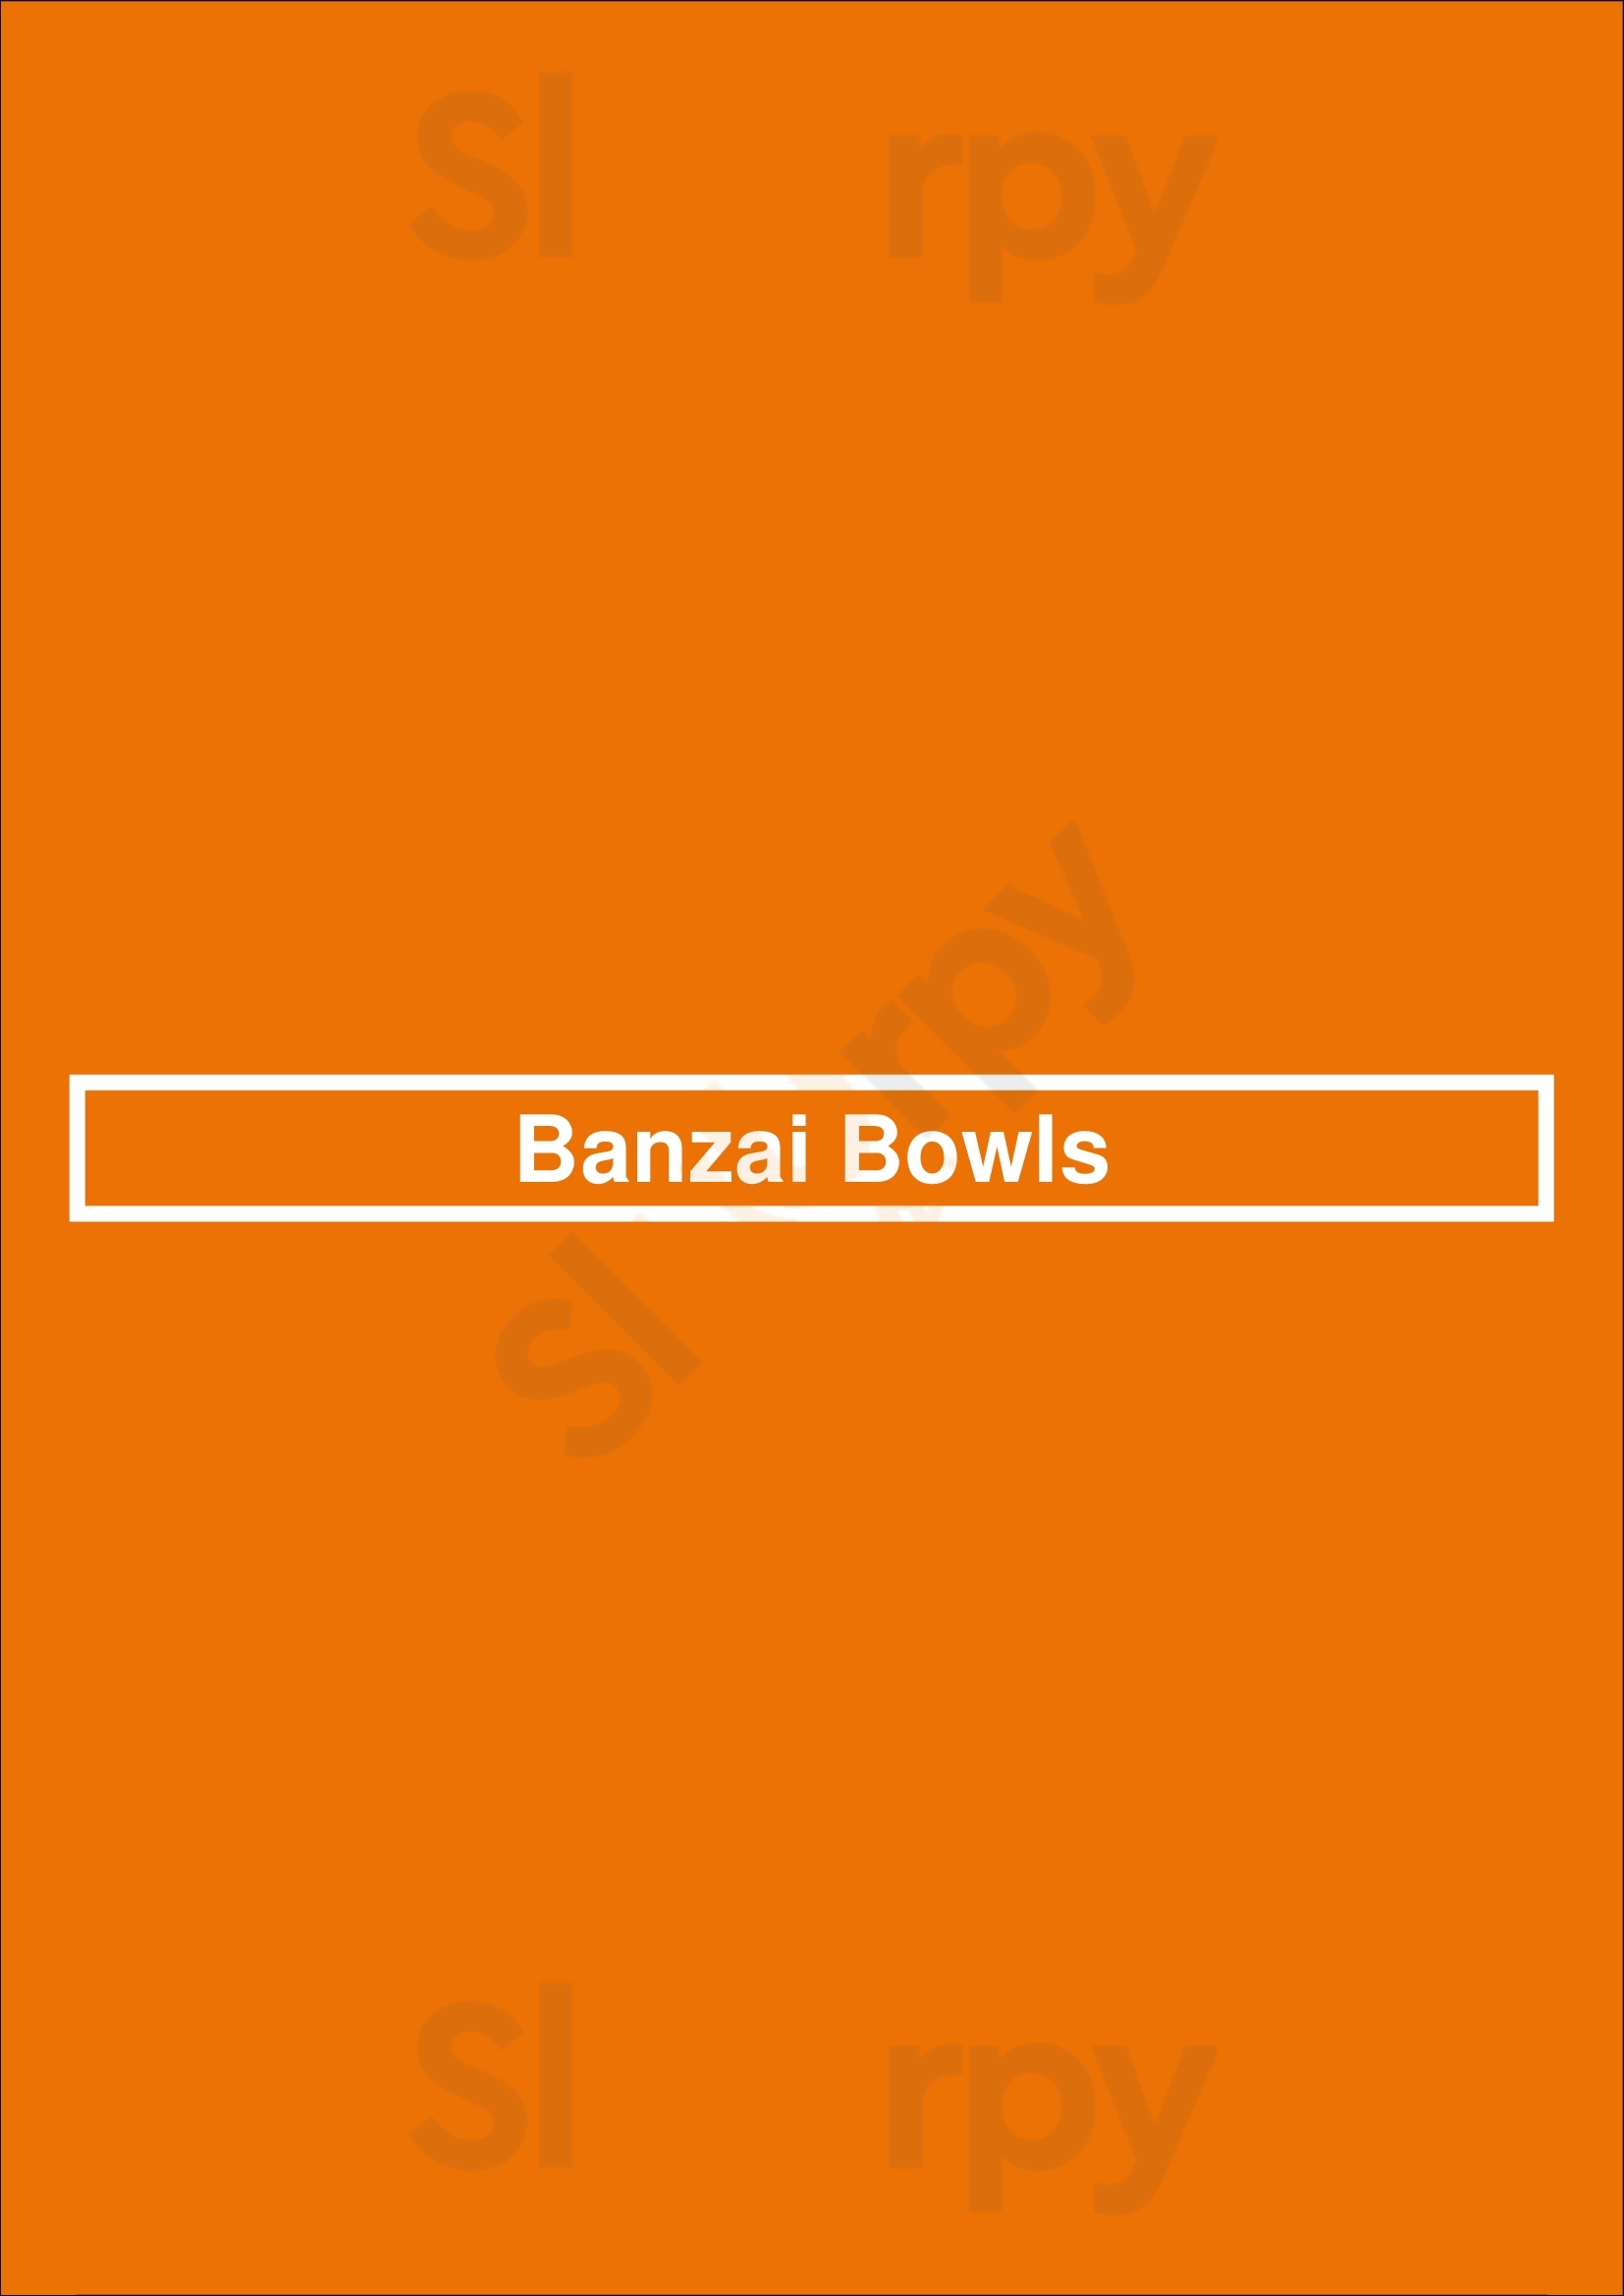 Banzai Bowls Huntington Beach Menu - 1